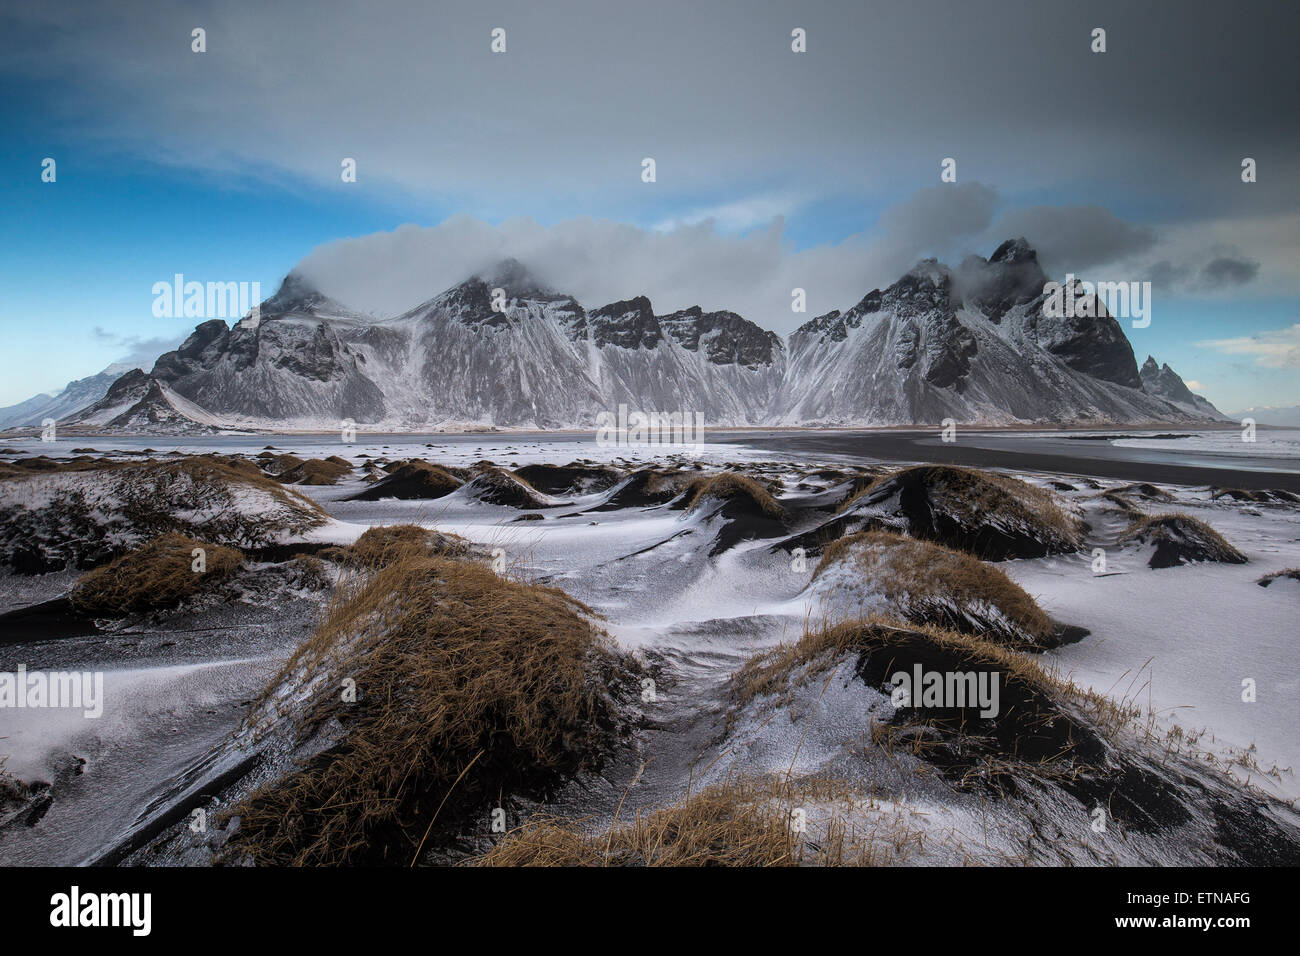 Montagne coperte di neve dalla spiaggia di sabbia nera, Islanda Foto Stock